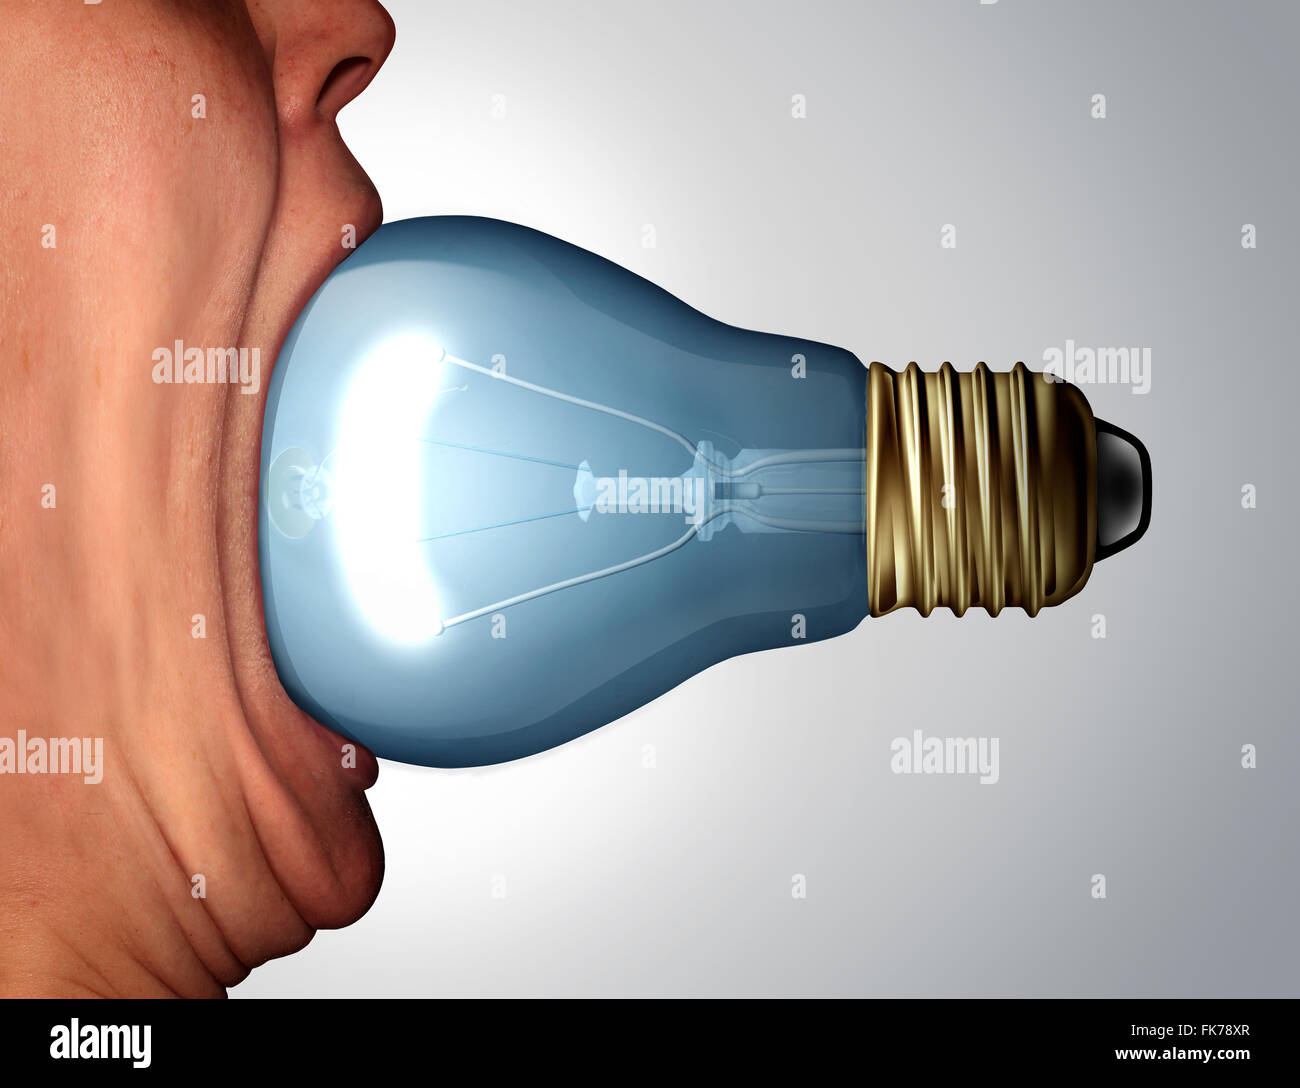 Kreative Diät-Konzept als ein offenem riesige menschliche Mund essen eine Glühlampe oder Glühbirne Objekt als geschäftliche Kommunikation Symbol und Marketing Kreativität Symbol. Stockfoto